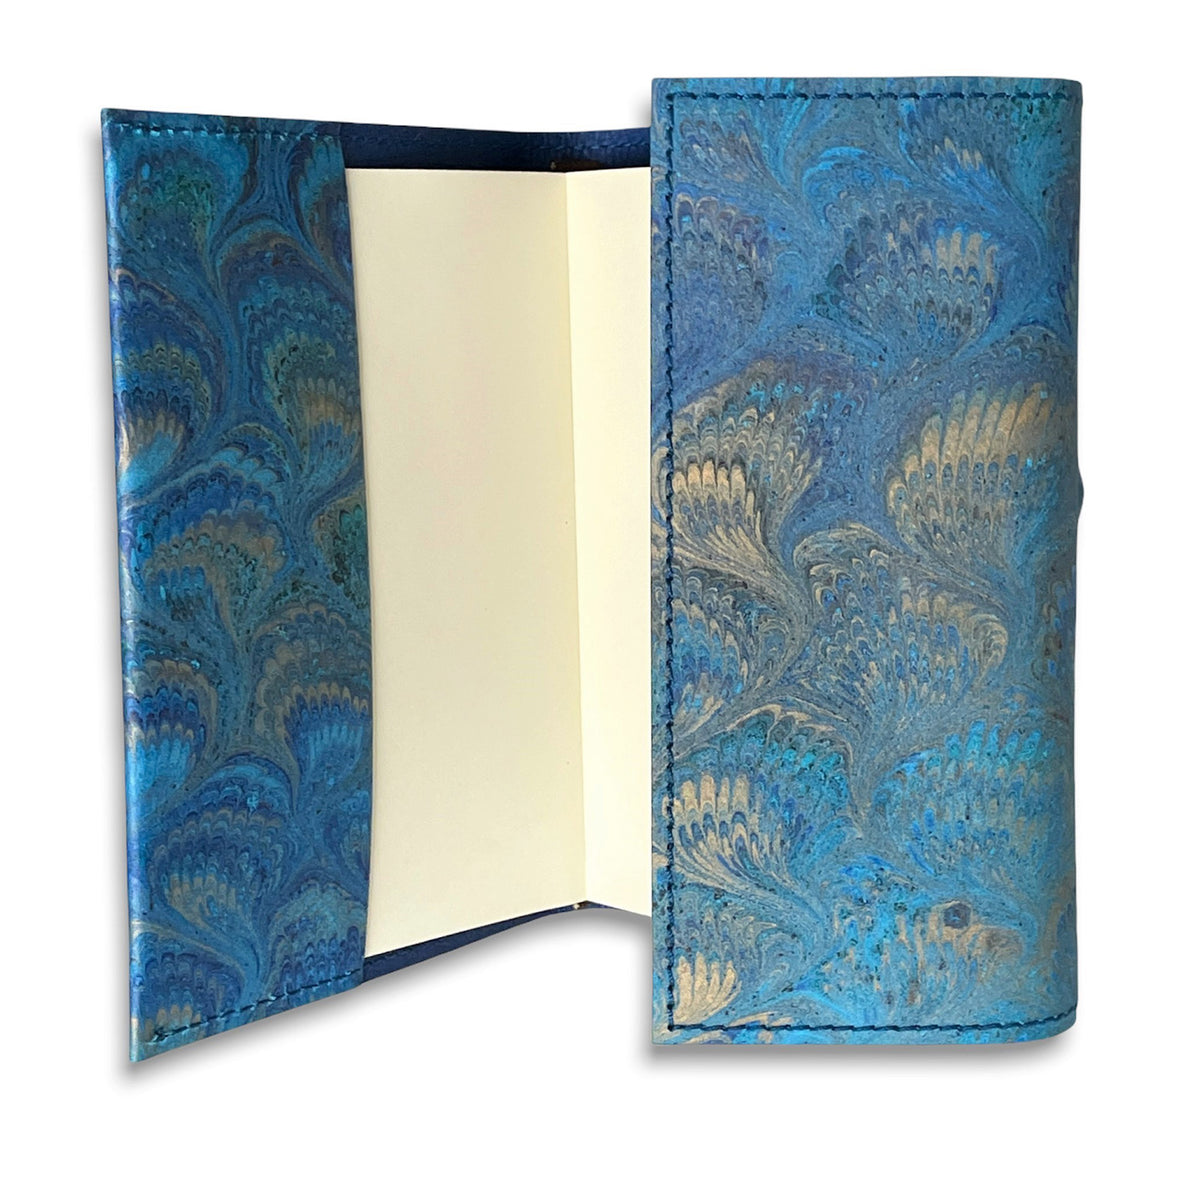 Florentine Sketchbook Marble Blue Leather